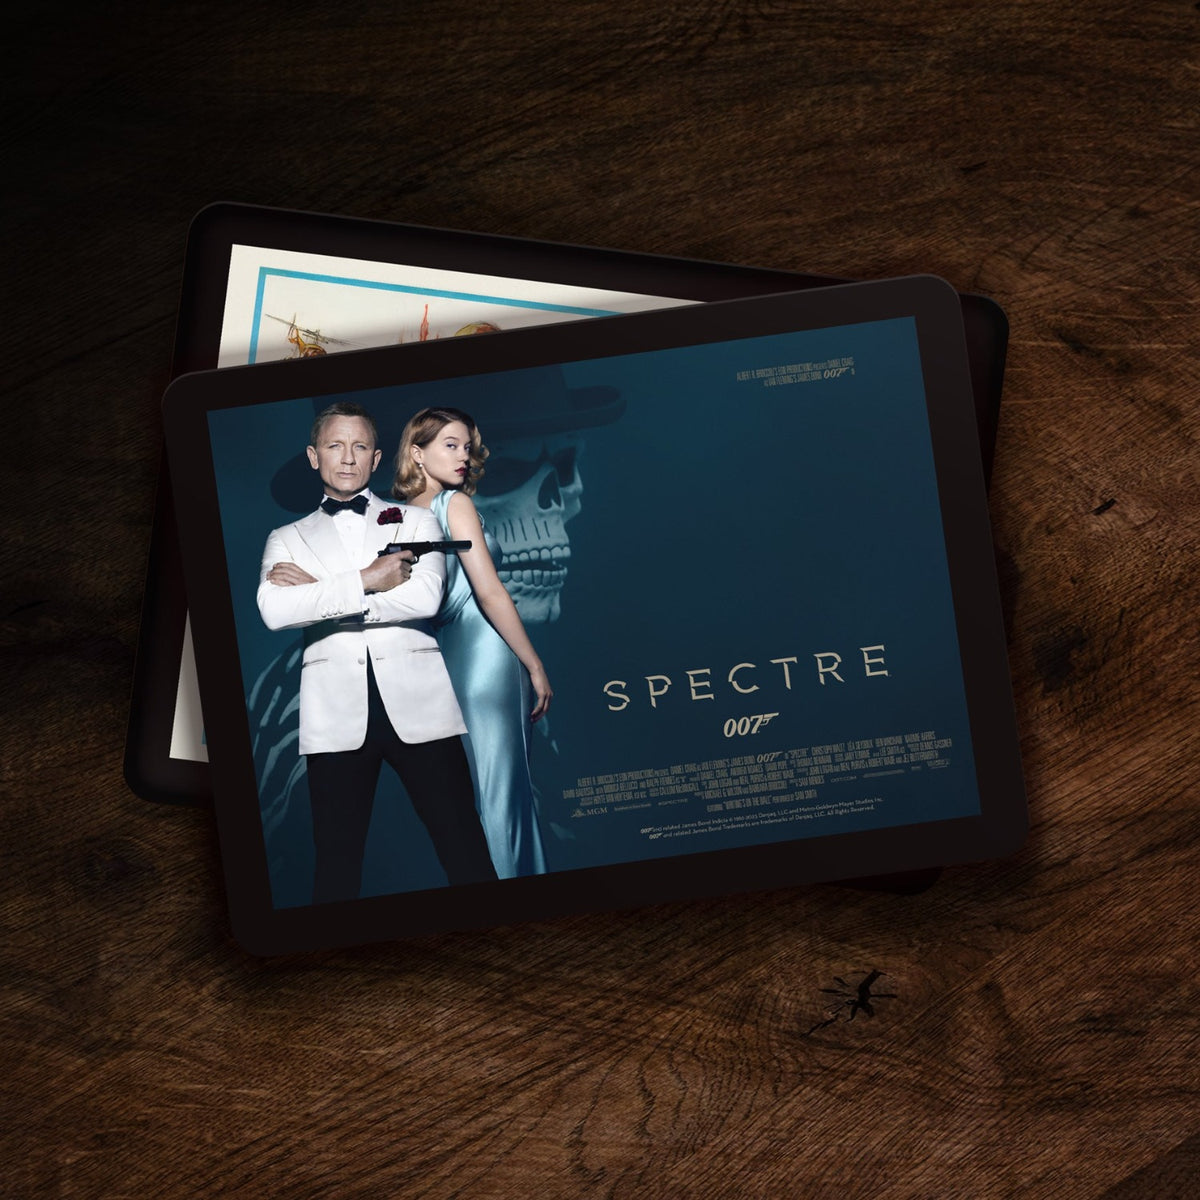 James Bond Placemat - Spectre Edition